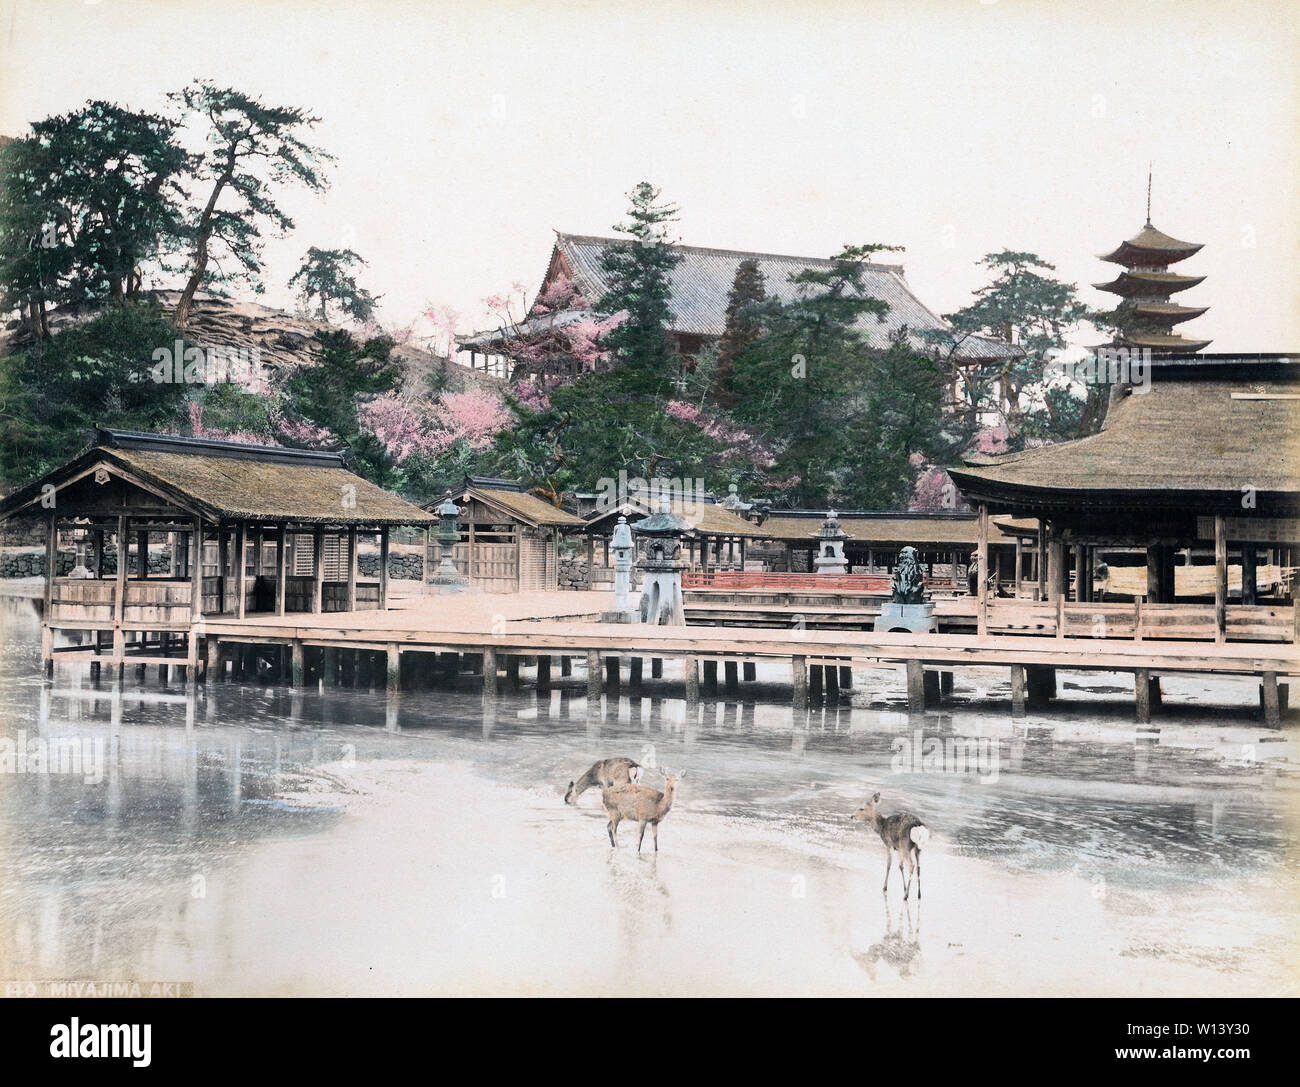 [1890s Japan - Itsukushima Jinja Schrein, Hiroshima] - Allgemeine Ansicht der Itsukushima-Schrein auf der Insel Miyajima, Hiroshima. Heilige sind Rehe wandern in den Vordergrund, eine Pagode kann im Hintergrund gesehen werden. 19 Vintage albumen Foto. Stockfoto